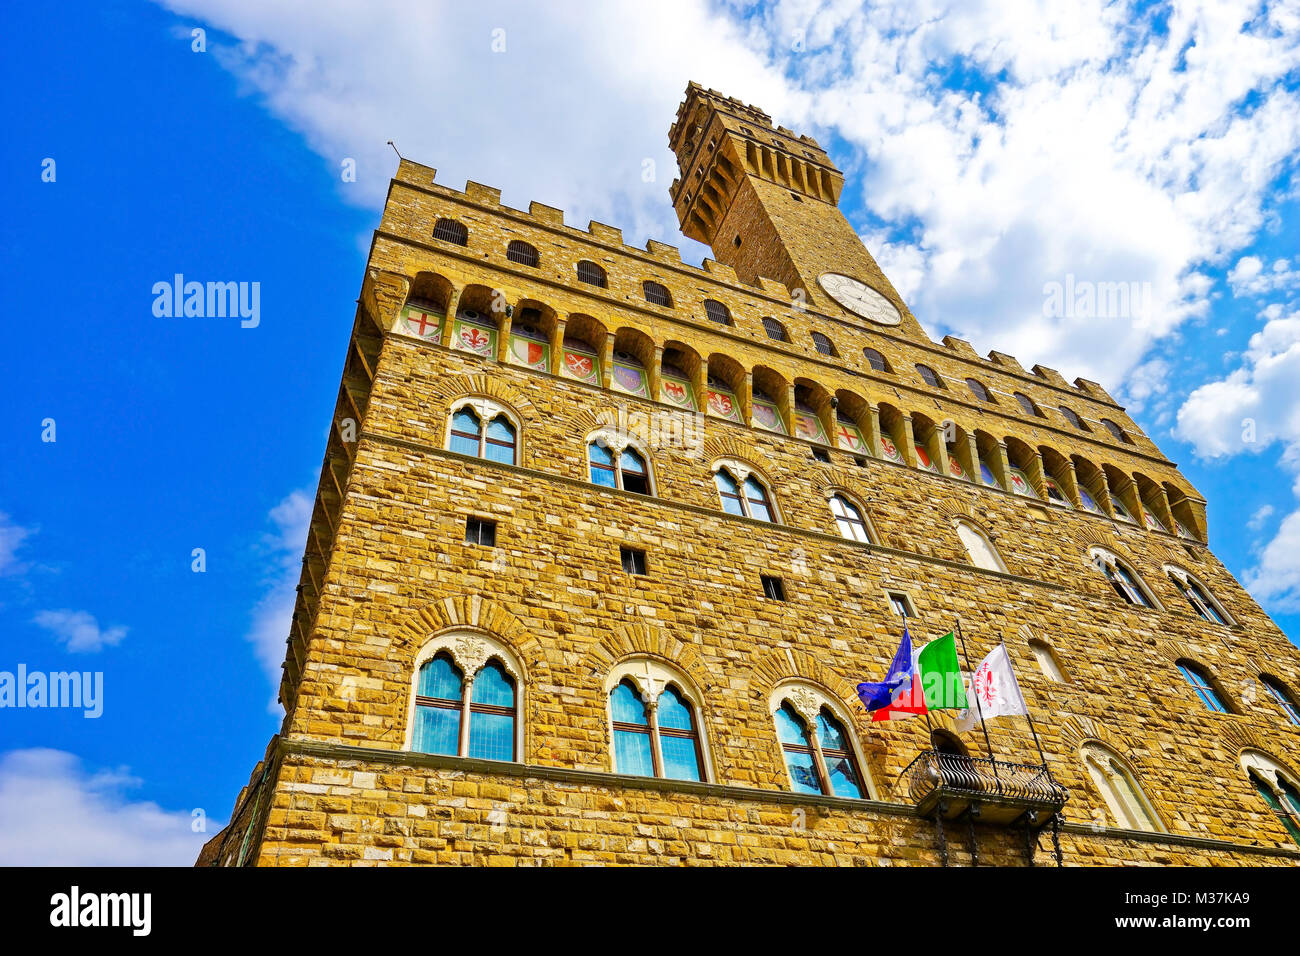 View of the Piazza della Signoria and Palazzo Vecchio in Florence on a sunny day Stock Photo